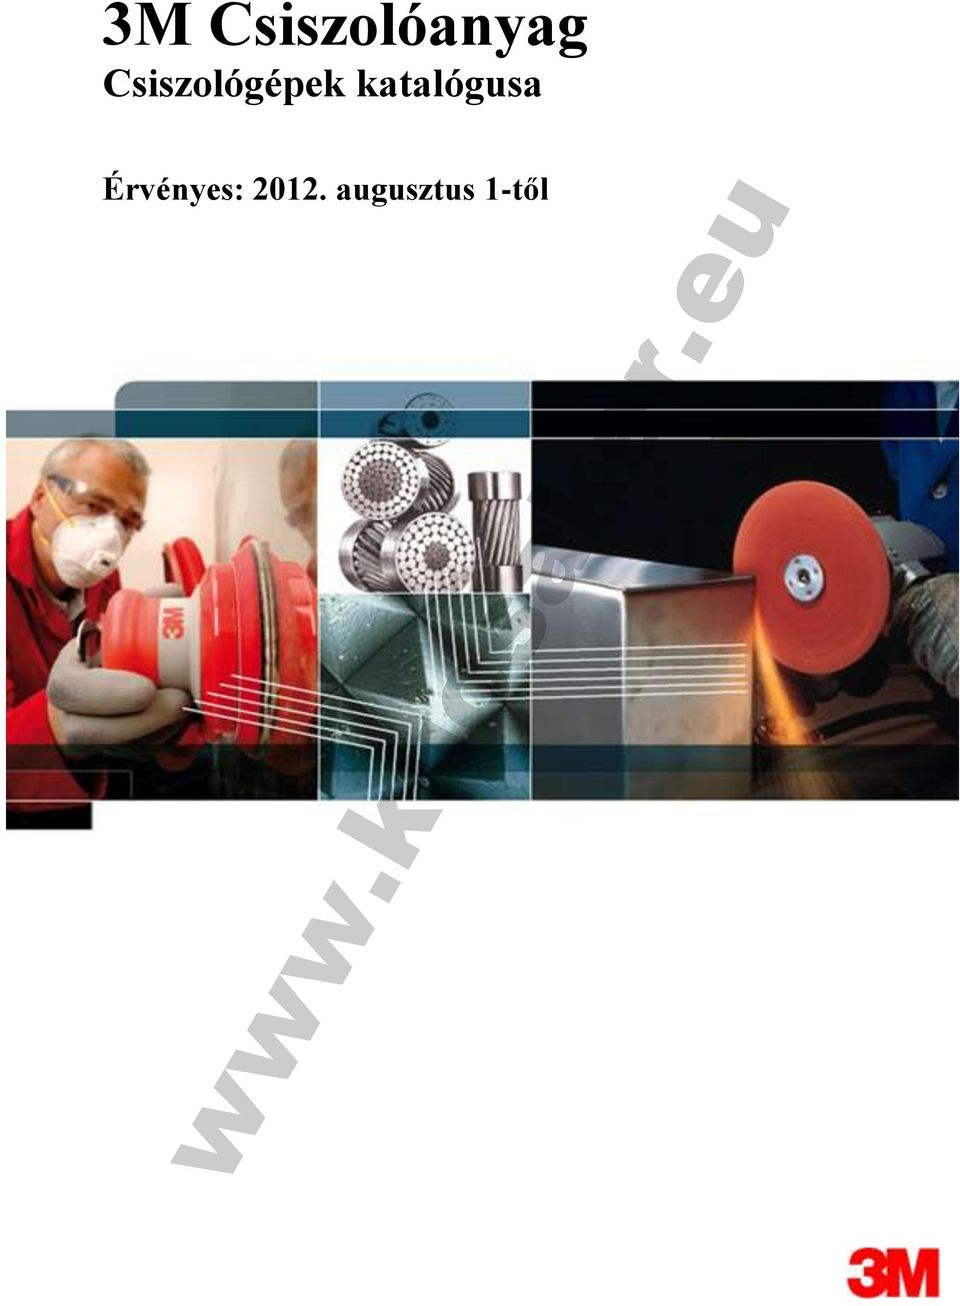 3M Csiszolóanyag Csiszológépek katalógusa. Érvényes: augusztus 1-től. - PDF  Ingyenes letöltés